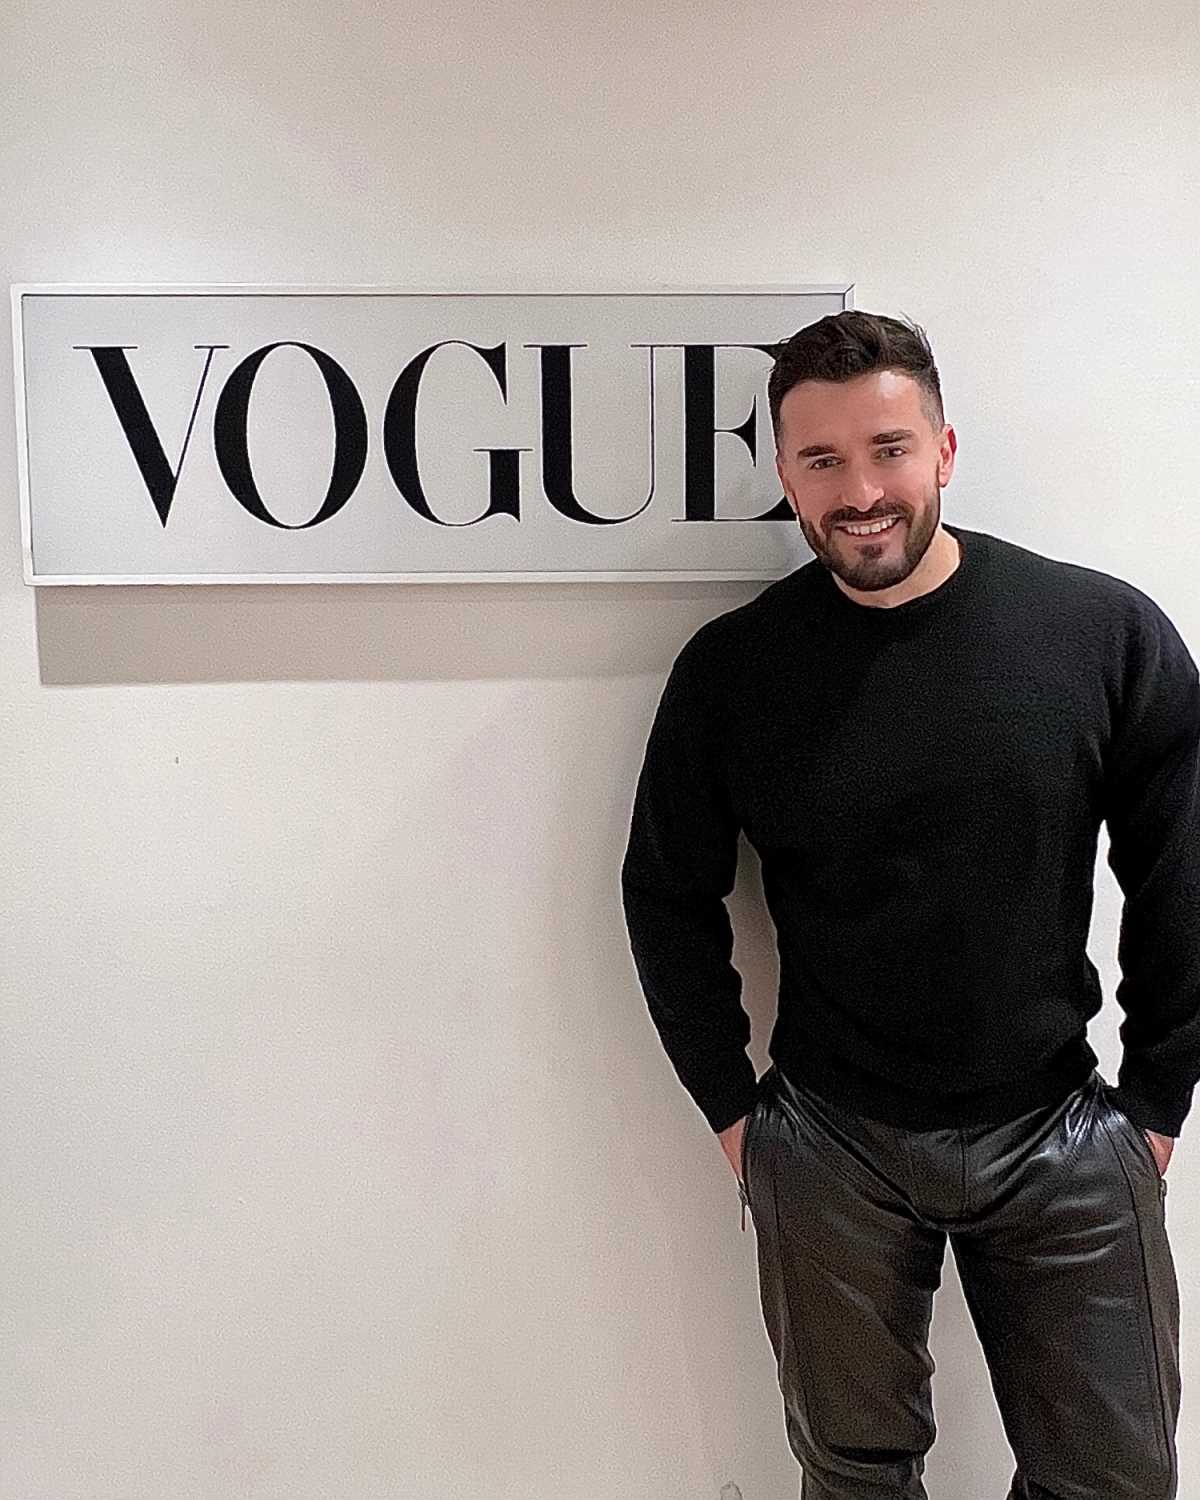 Najbolji hrvatski stilist Petar Trbović imenovan modnim direktorom magazina Vogue Adria